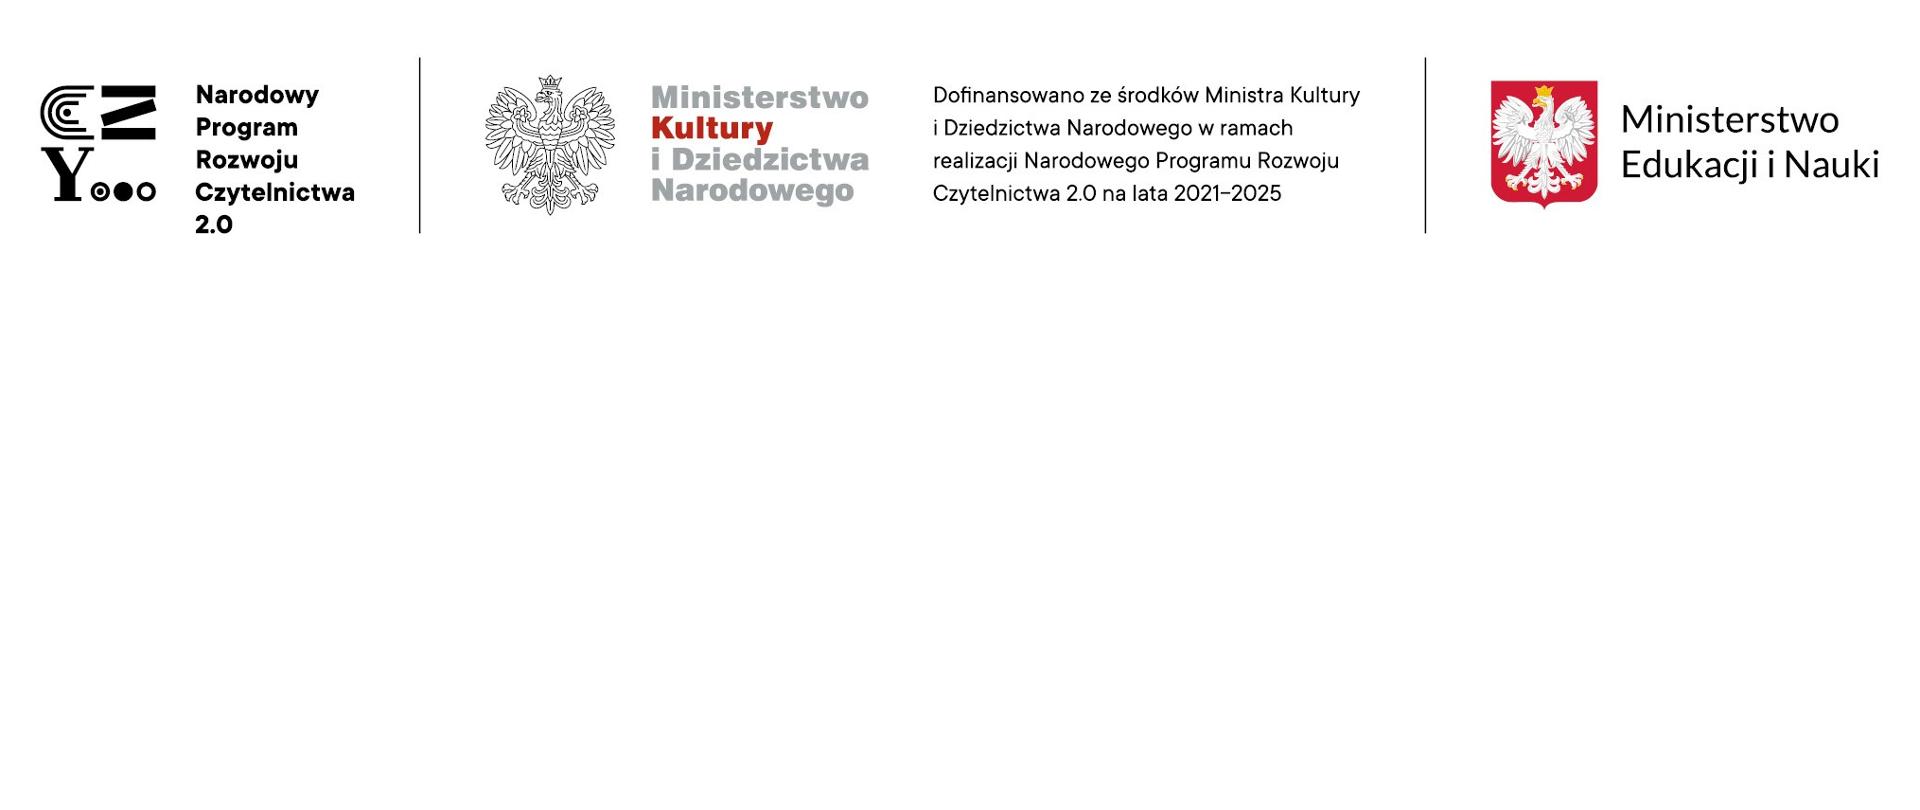 Logo Narodowego Programu Rozwoju Czytelnictwa 2.0: Narodowy Program Rozwoju Czytelnictwa 2.0, Ministerstwo Kultury i Dziedzictwa Narodowego. Dofinansowano ze środków Ministra Kultury i Dziedzictwa Narodowego w ramach realizacji Narodowego Programu Rozwoju Czytelnictwa 2.0 na lata 2021-2025, Ministerstwo Edukacji i Nauki